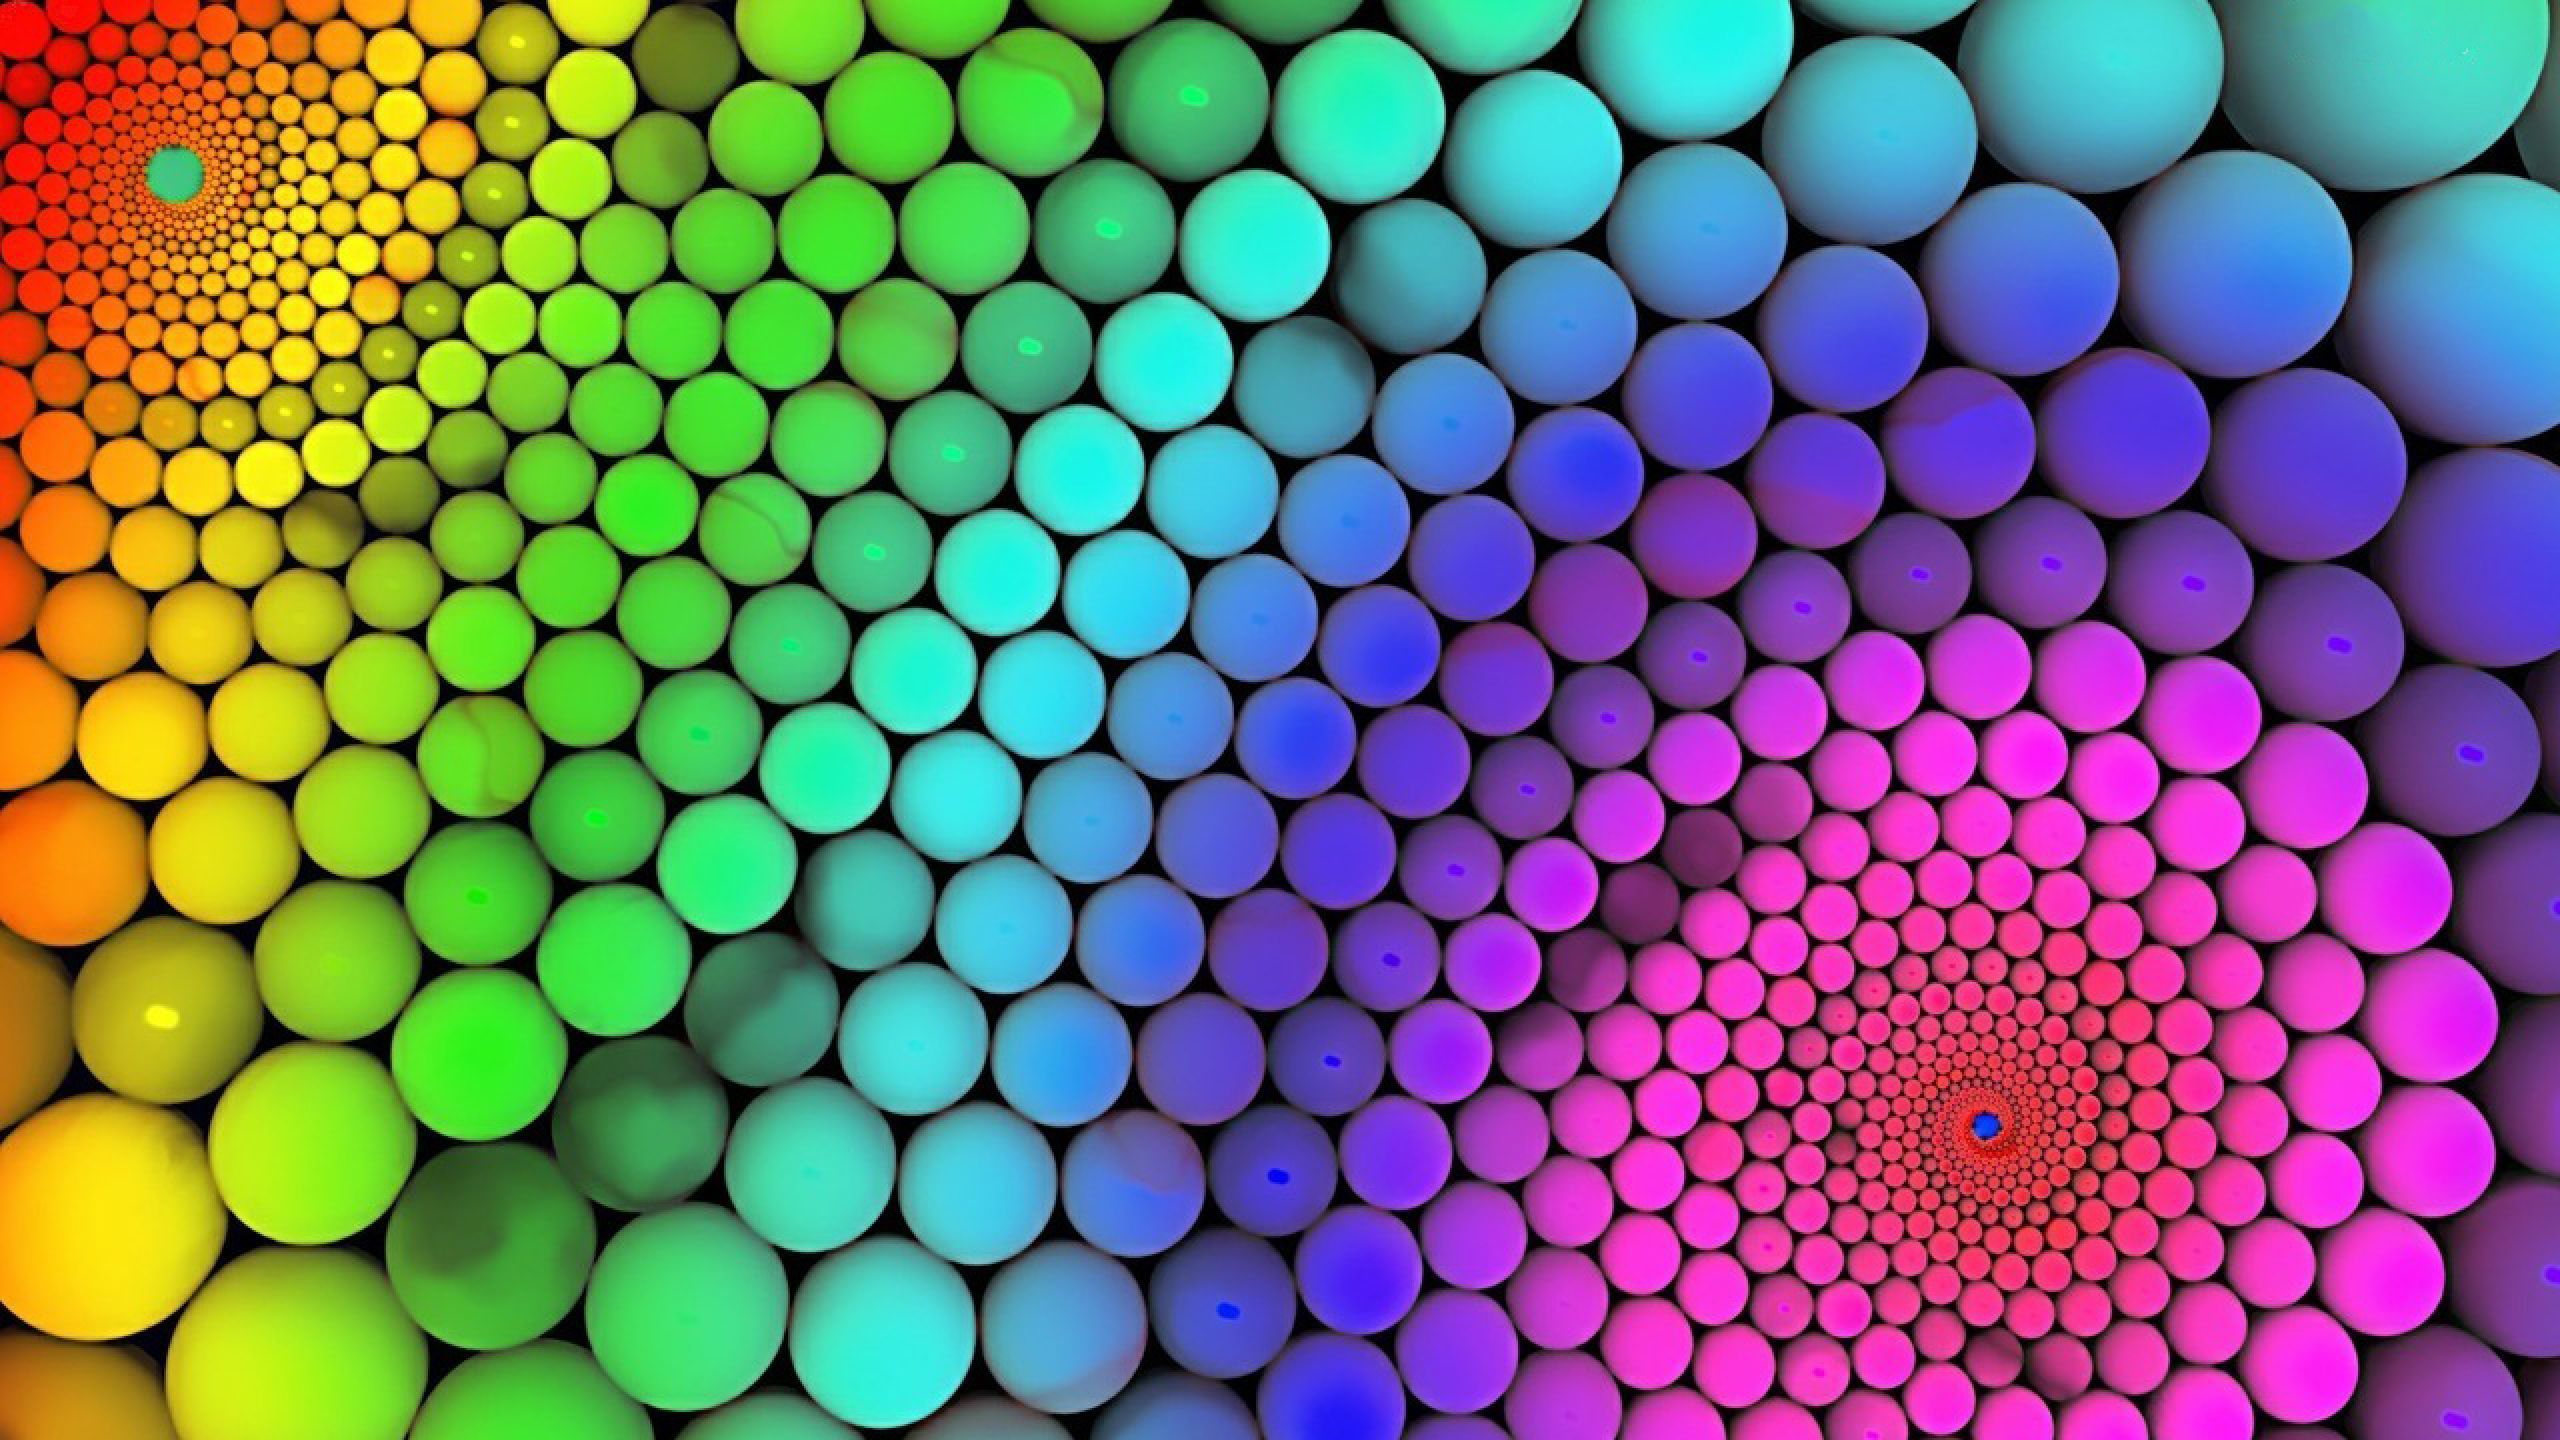 Colorful Moving Circles - Fondos de pantalla en movimiento | Todo es muro